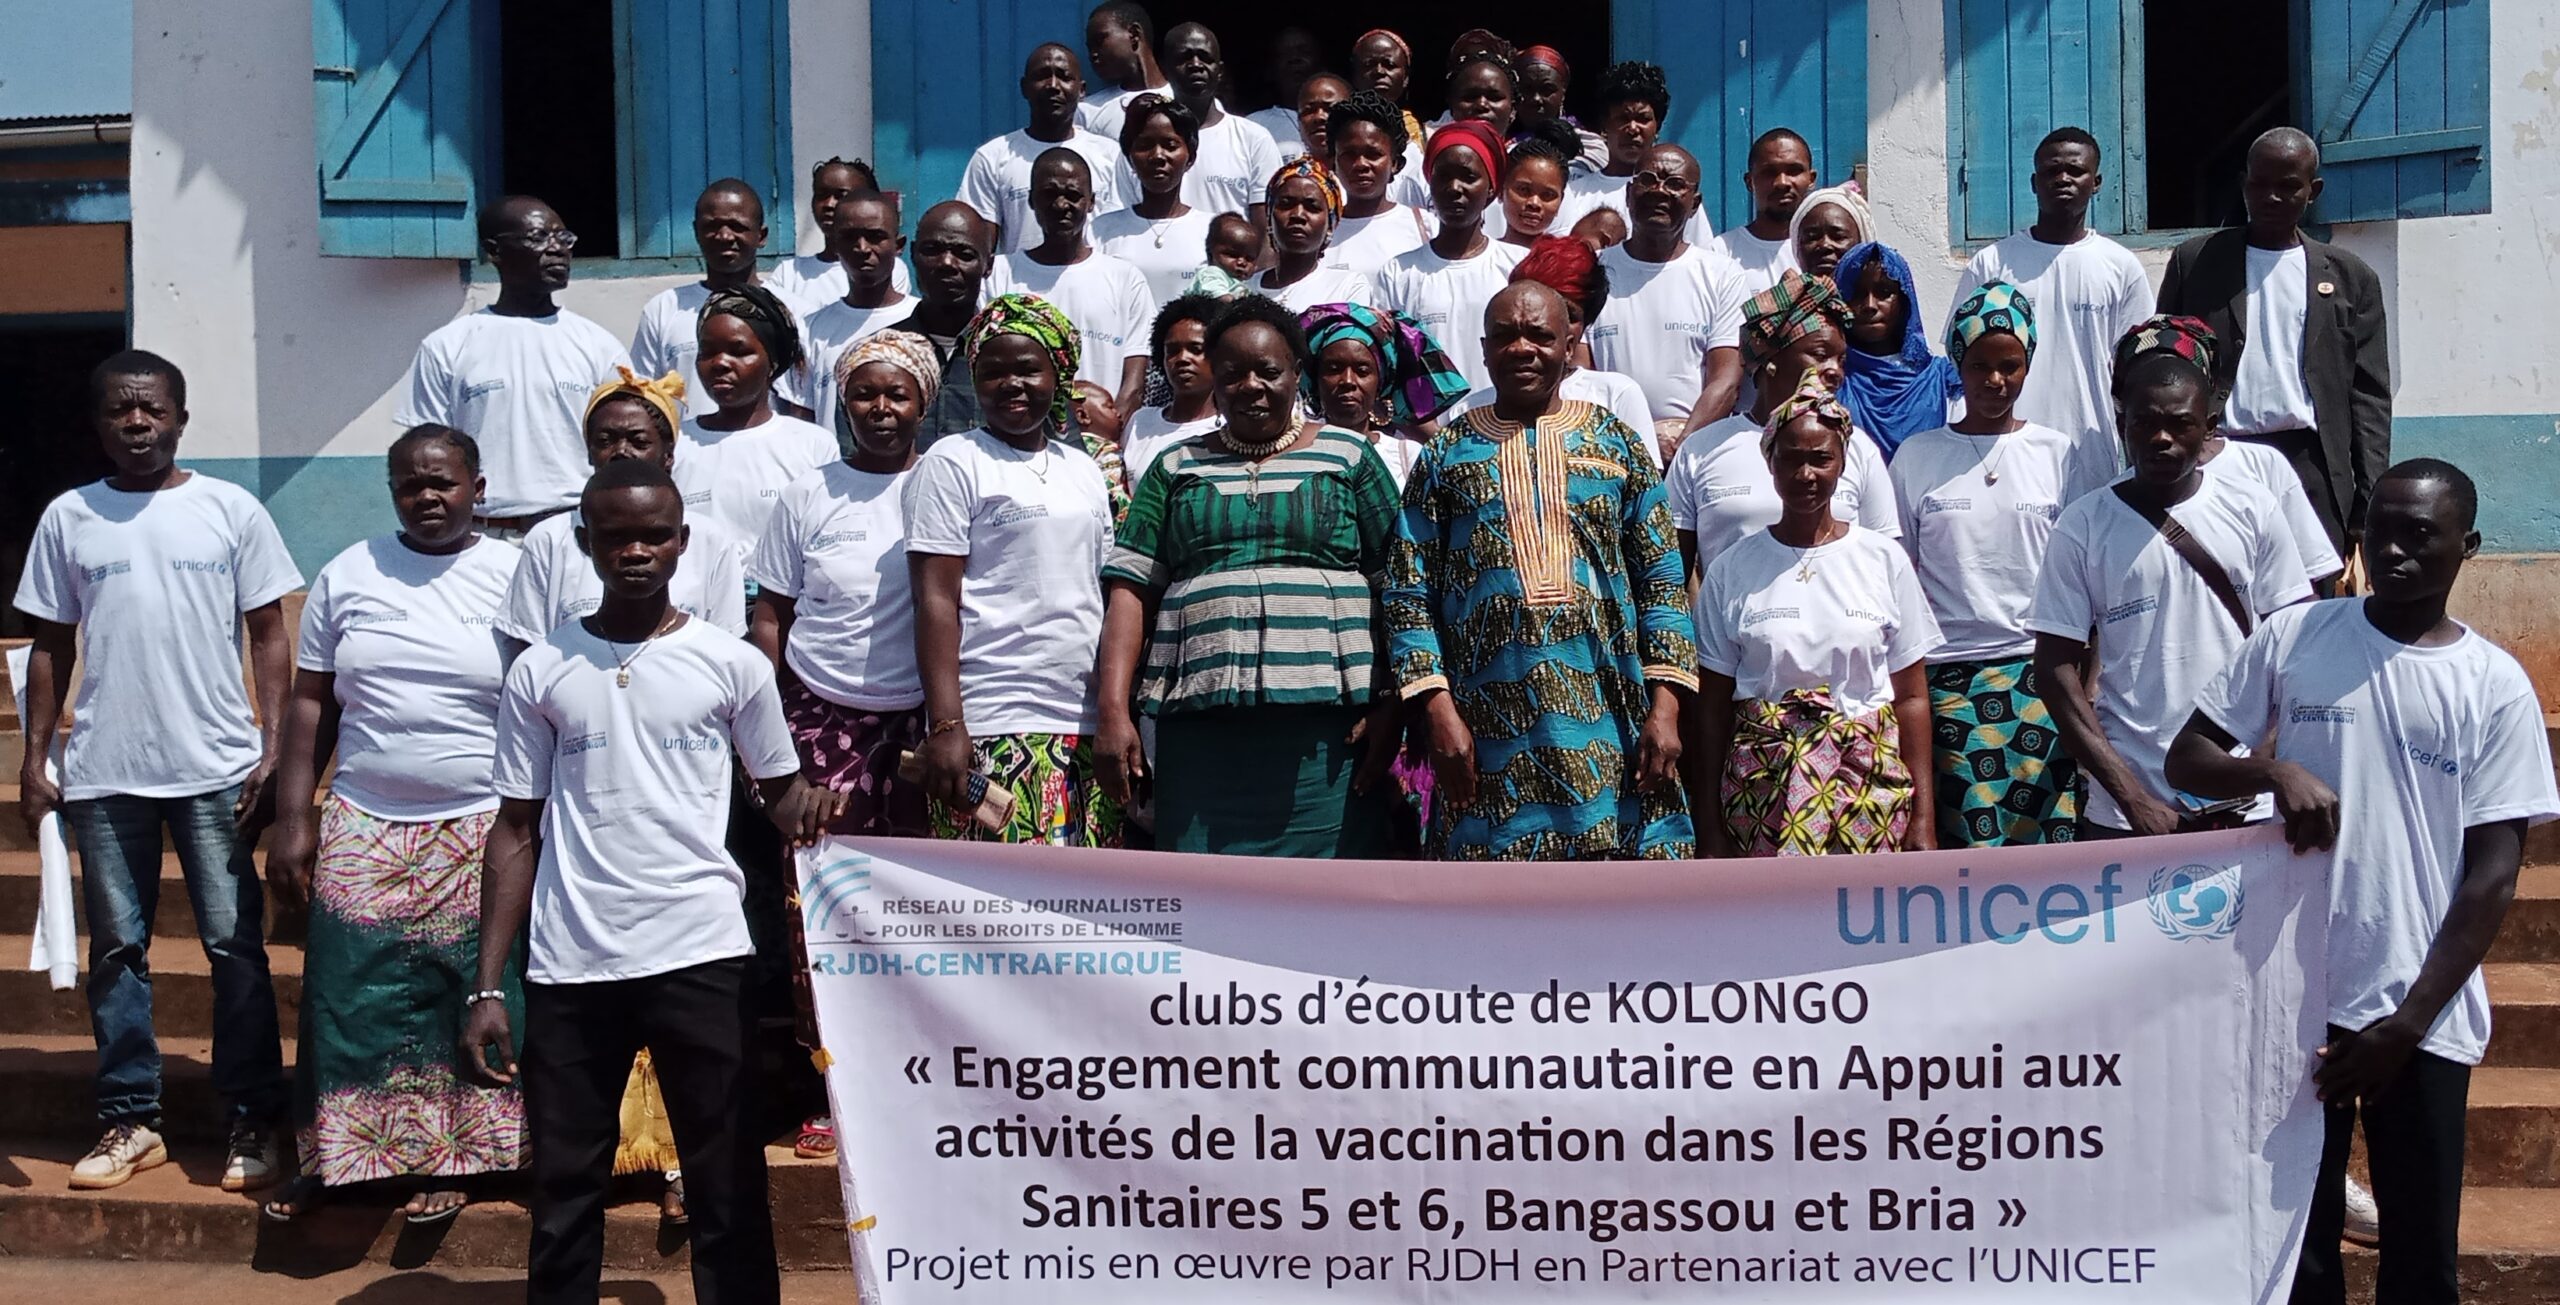 Centrafrique : Le RJDH intensifie ses activités sur la vaccination dans les régions 5 et 6 à travers les clubs d’écoutes : un projet financé par l’Unicef